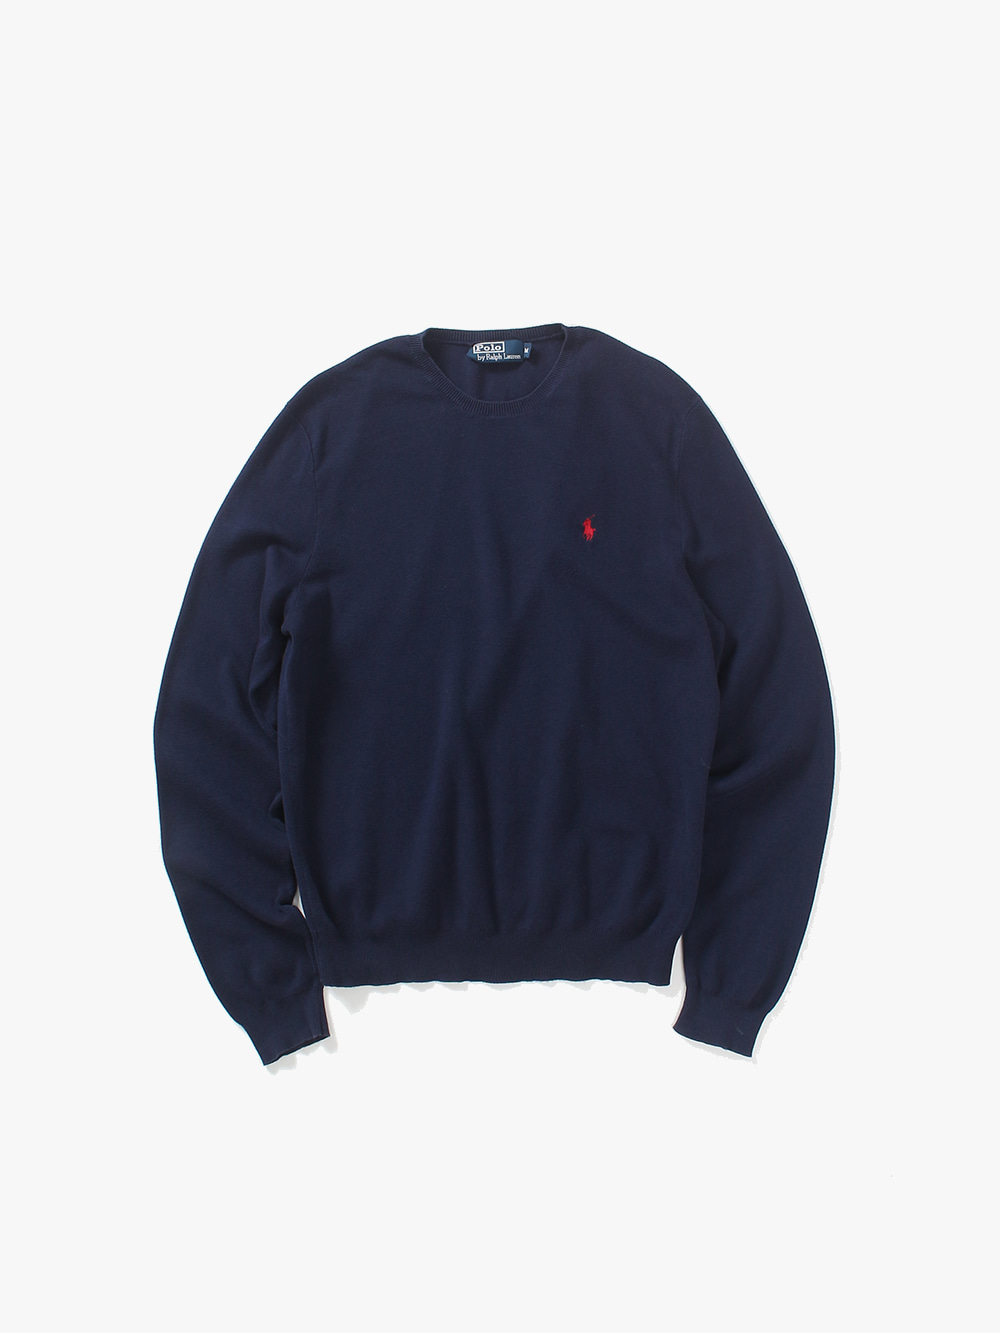 [ M ] Polo Ralph Lauren Sweater (6386)